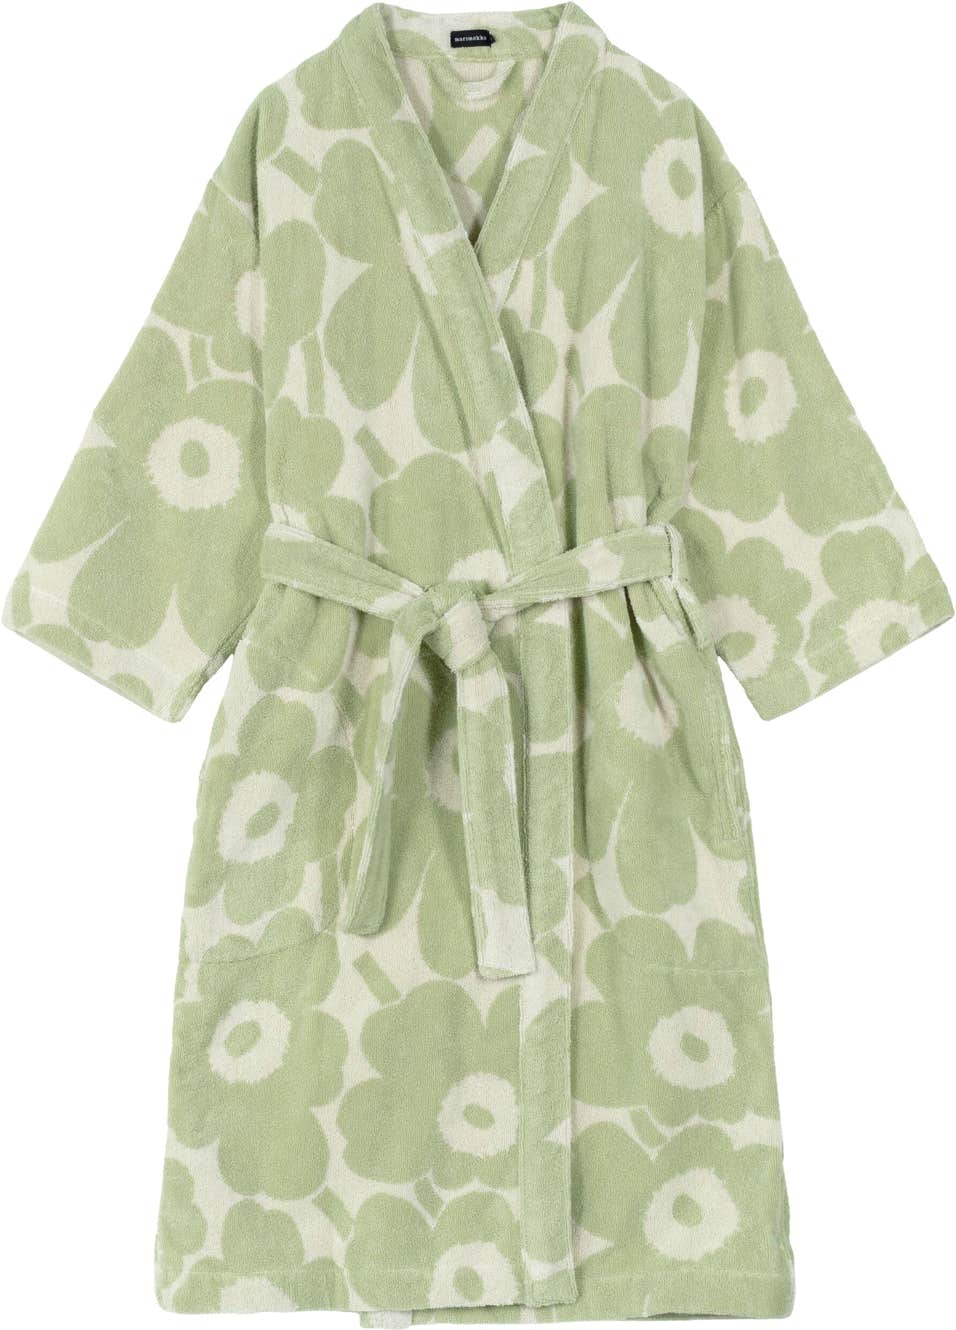 Unikko bathrobe – organic cotton terry